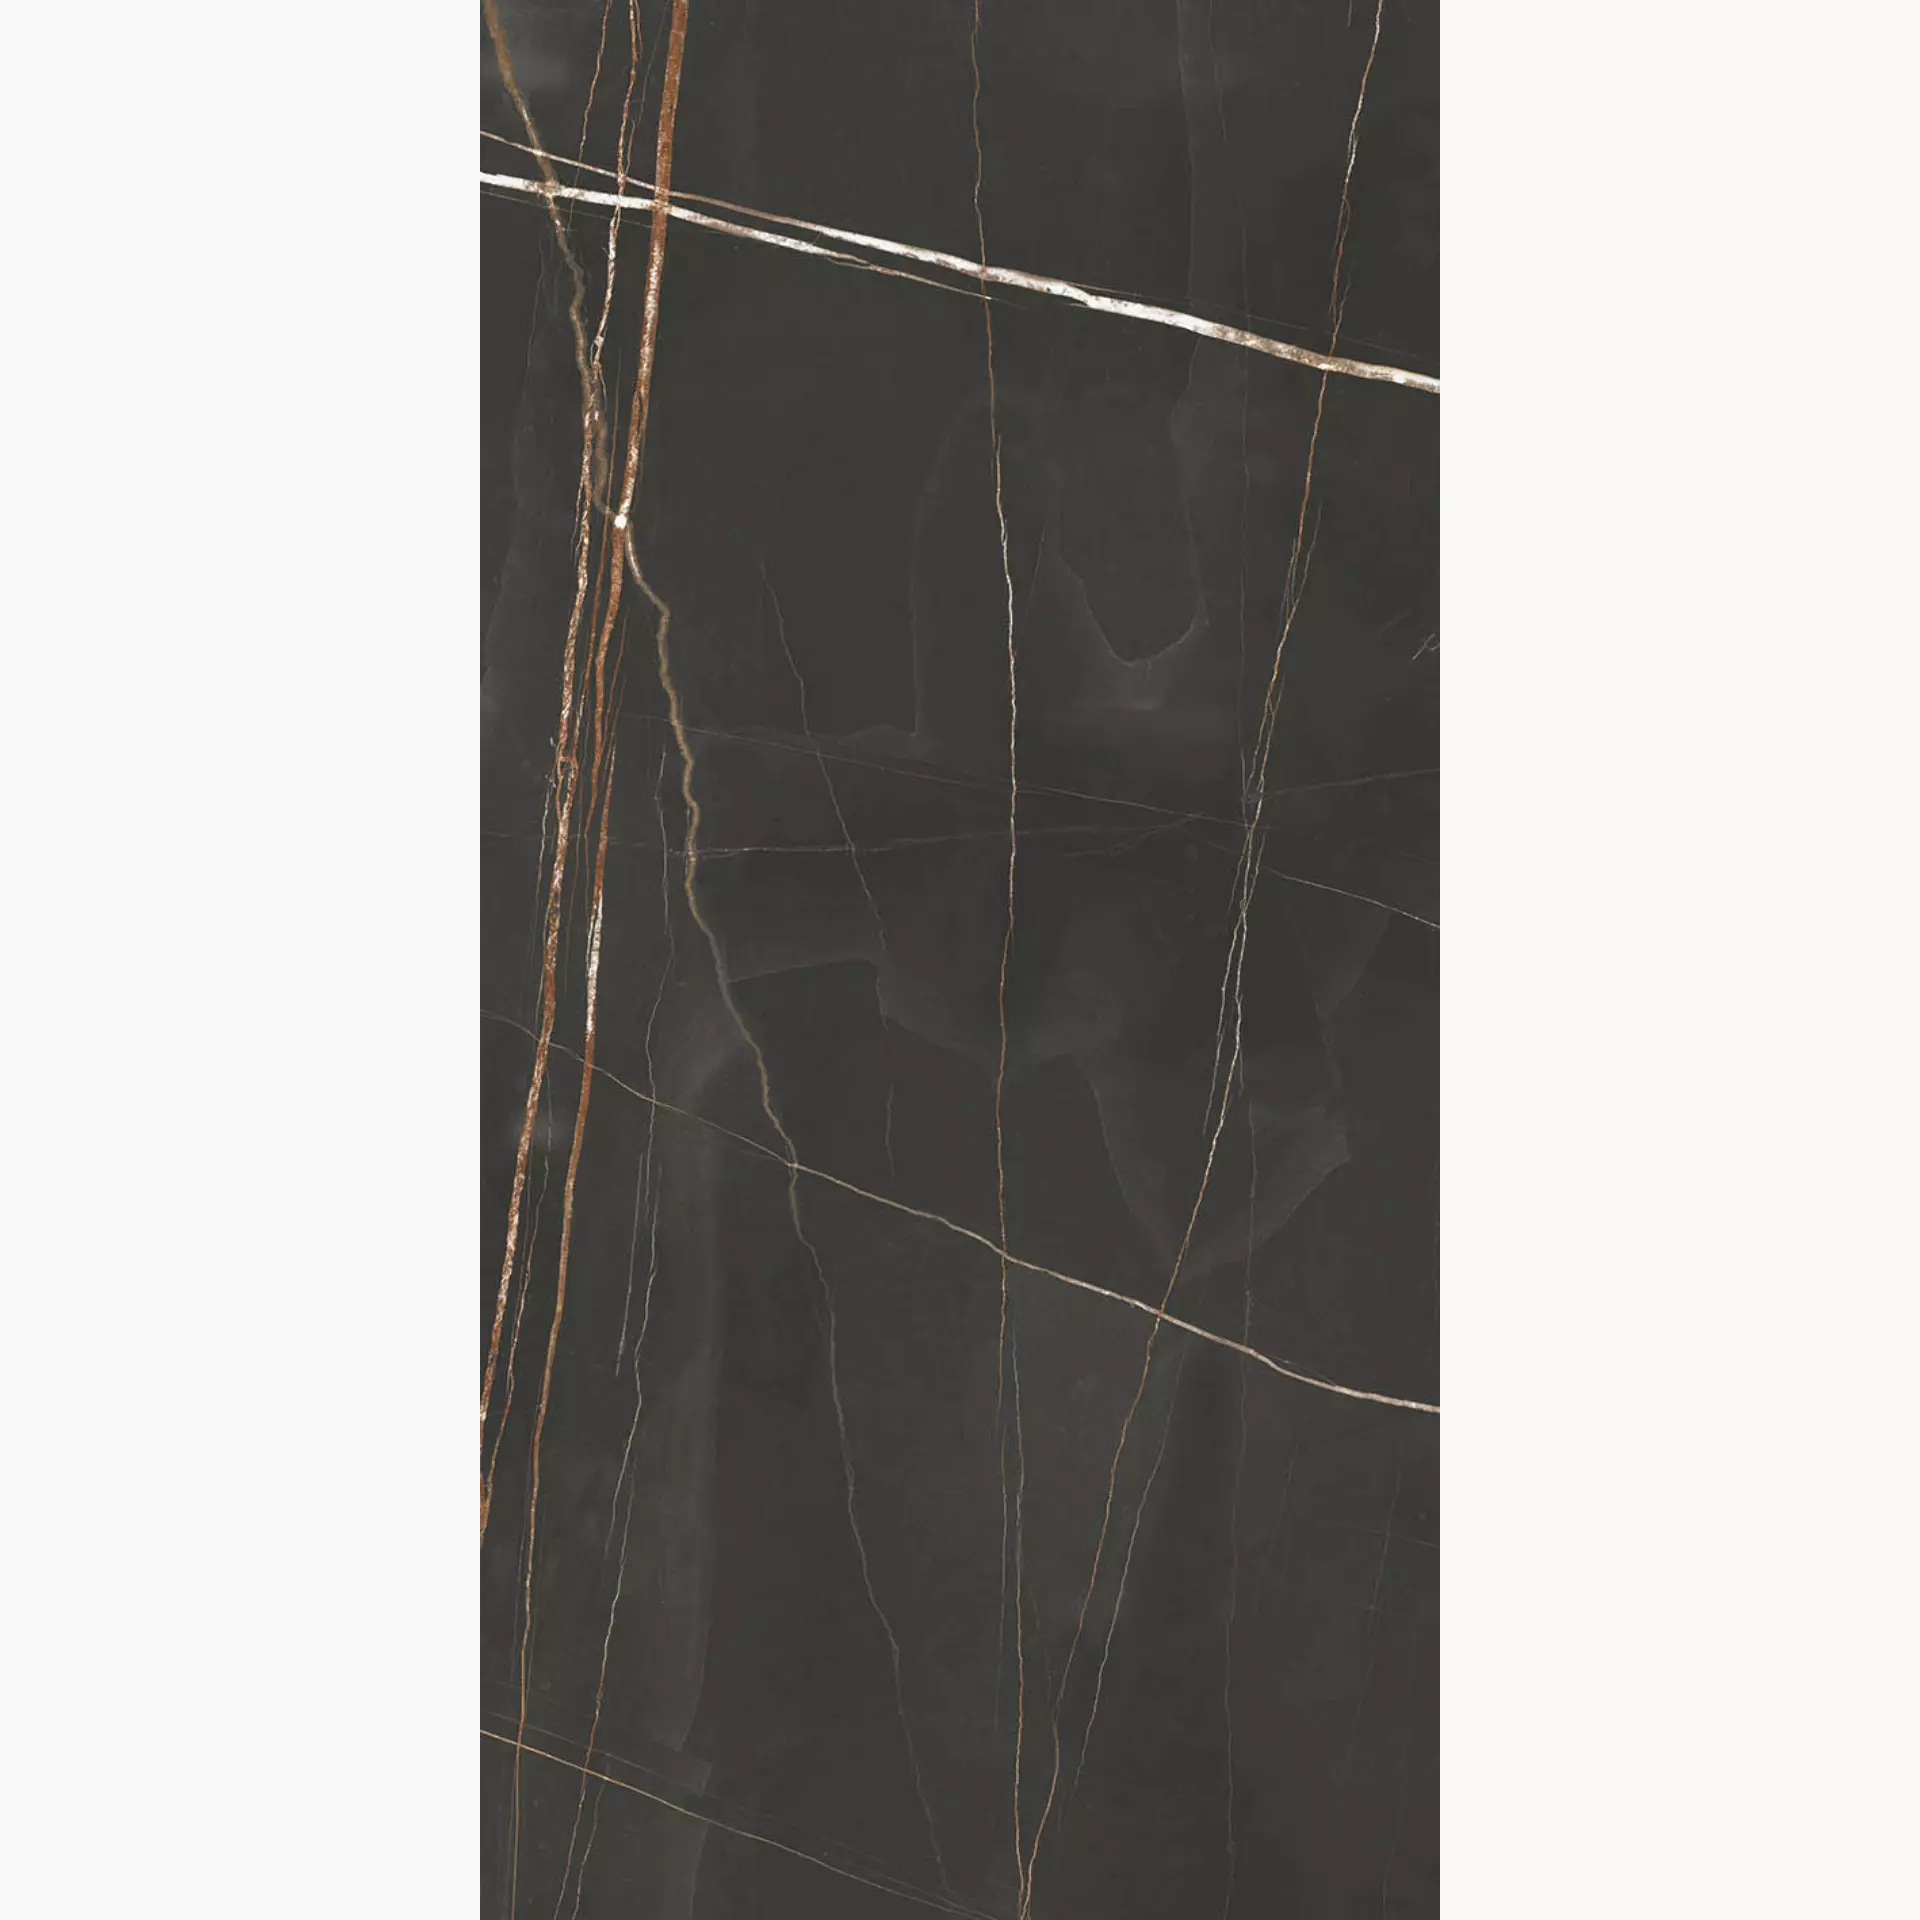 Herberia Marmi Pregiati Sahara Noir Lucido Sahara Noir HMPP19 glaenzend 60x120cm 10mm